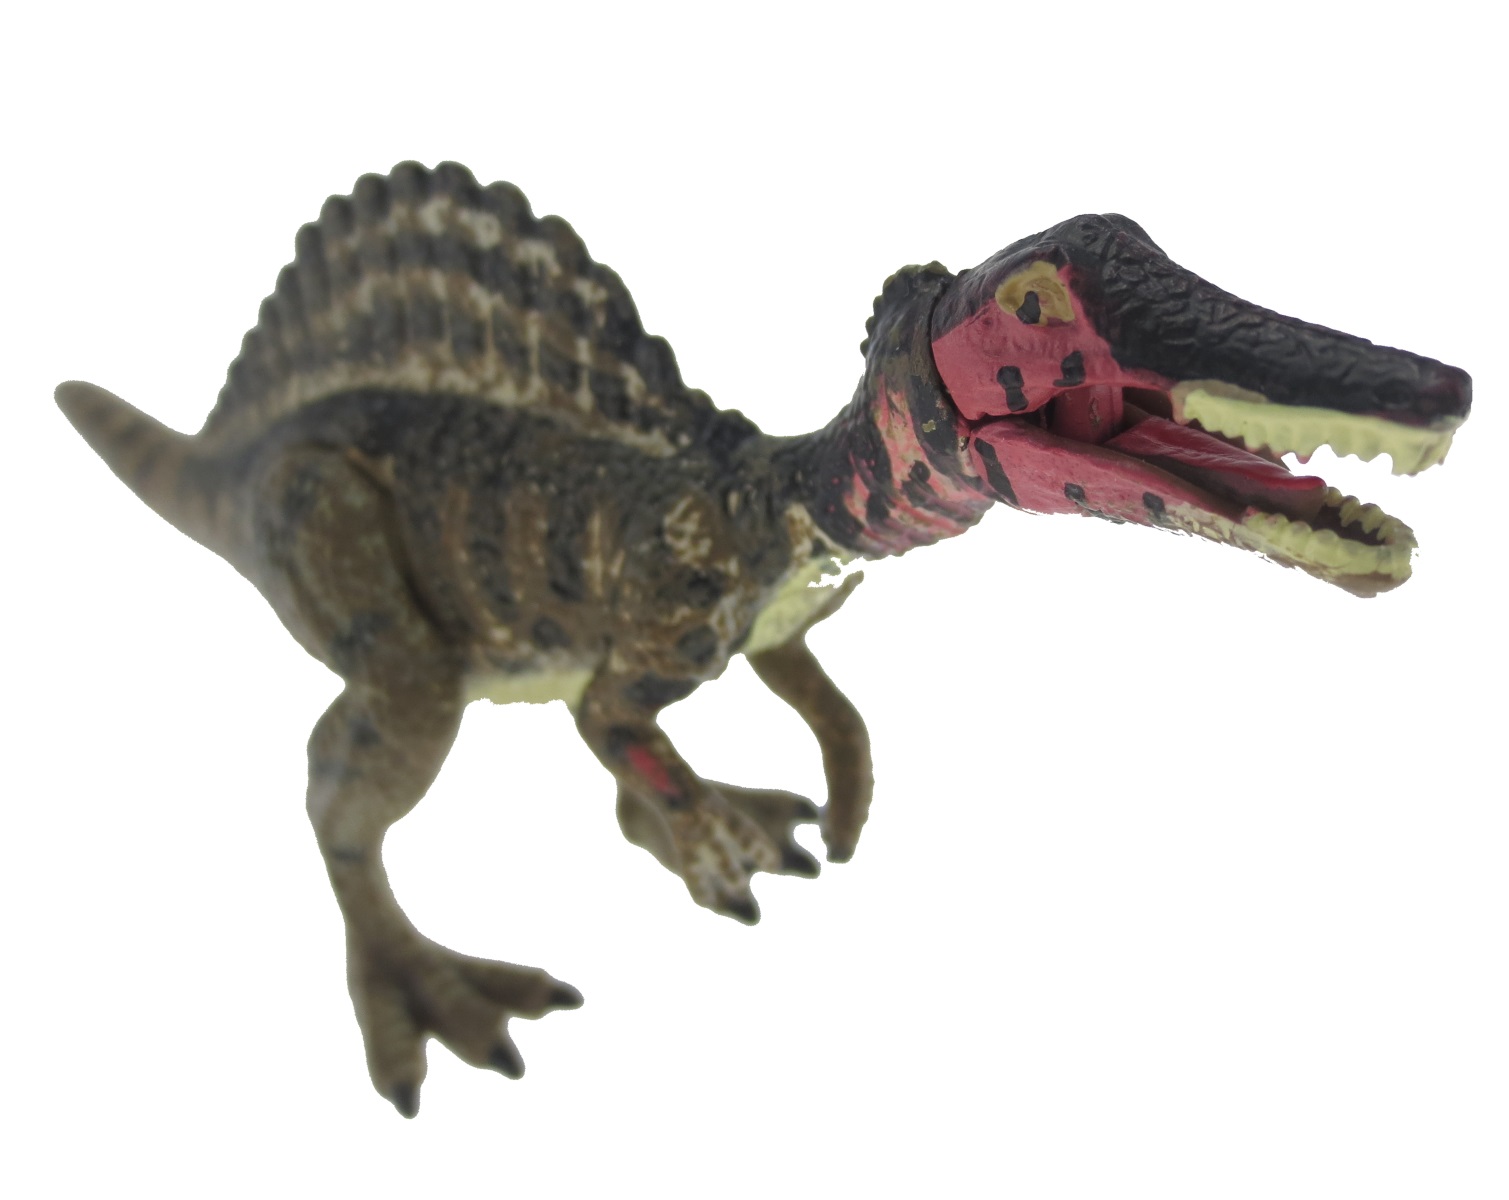 楽天市場 講談社監修 Move 恐竜 フィギュア スピノサウルス 白亜紀 肉食恐竜 図鑑 おもちゃ 父の日 プレゼント ３d 恐竜 おもちゃのヤマサン